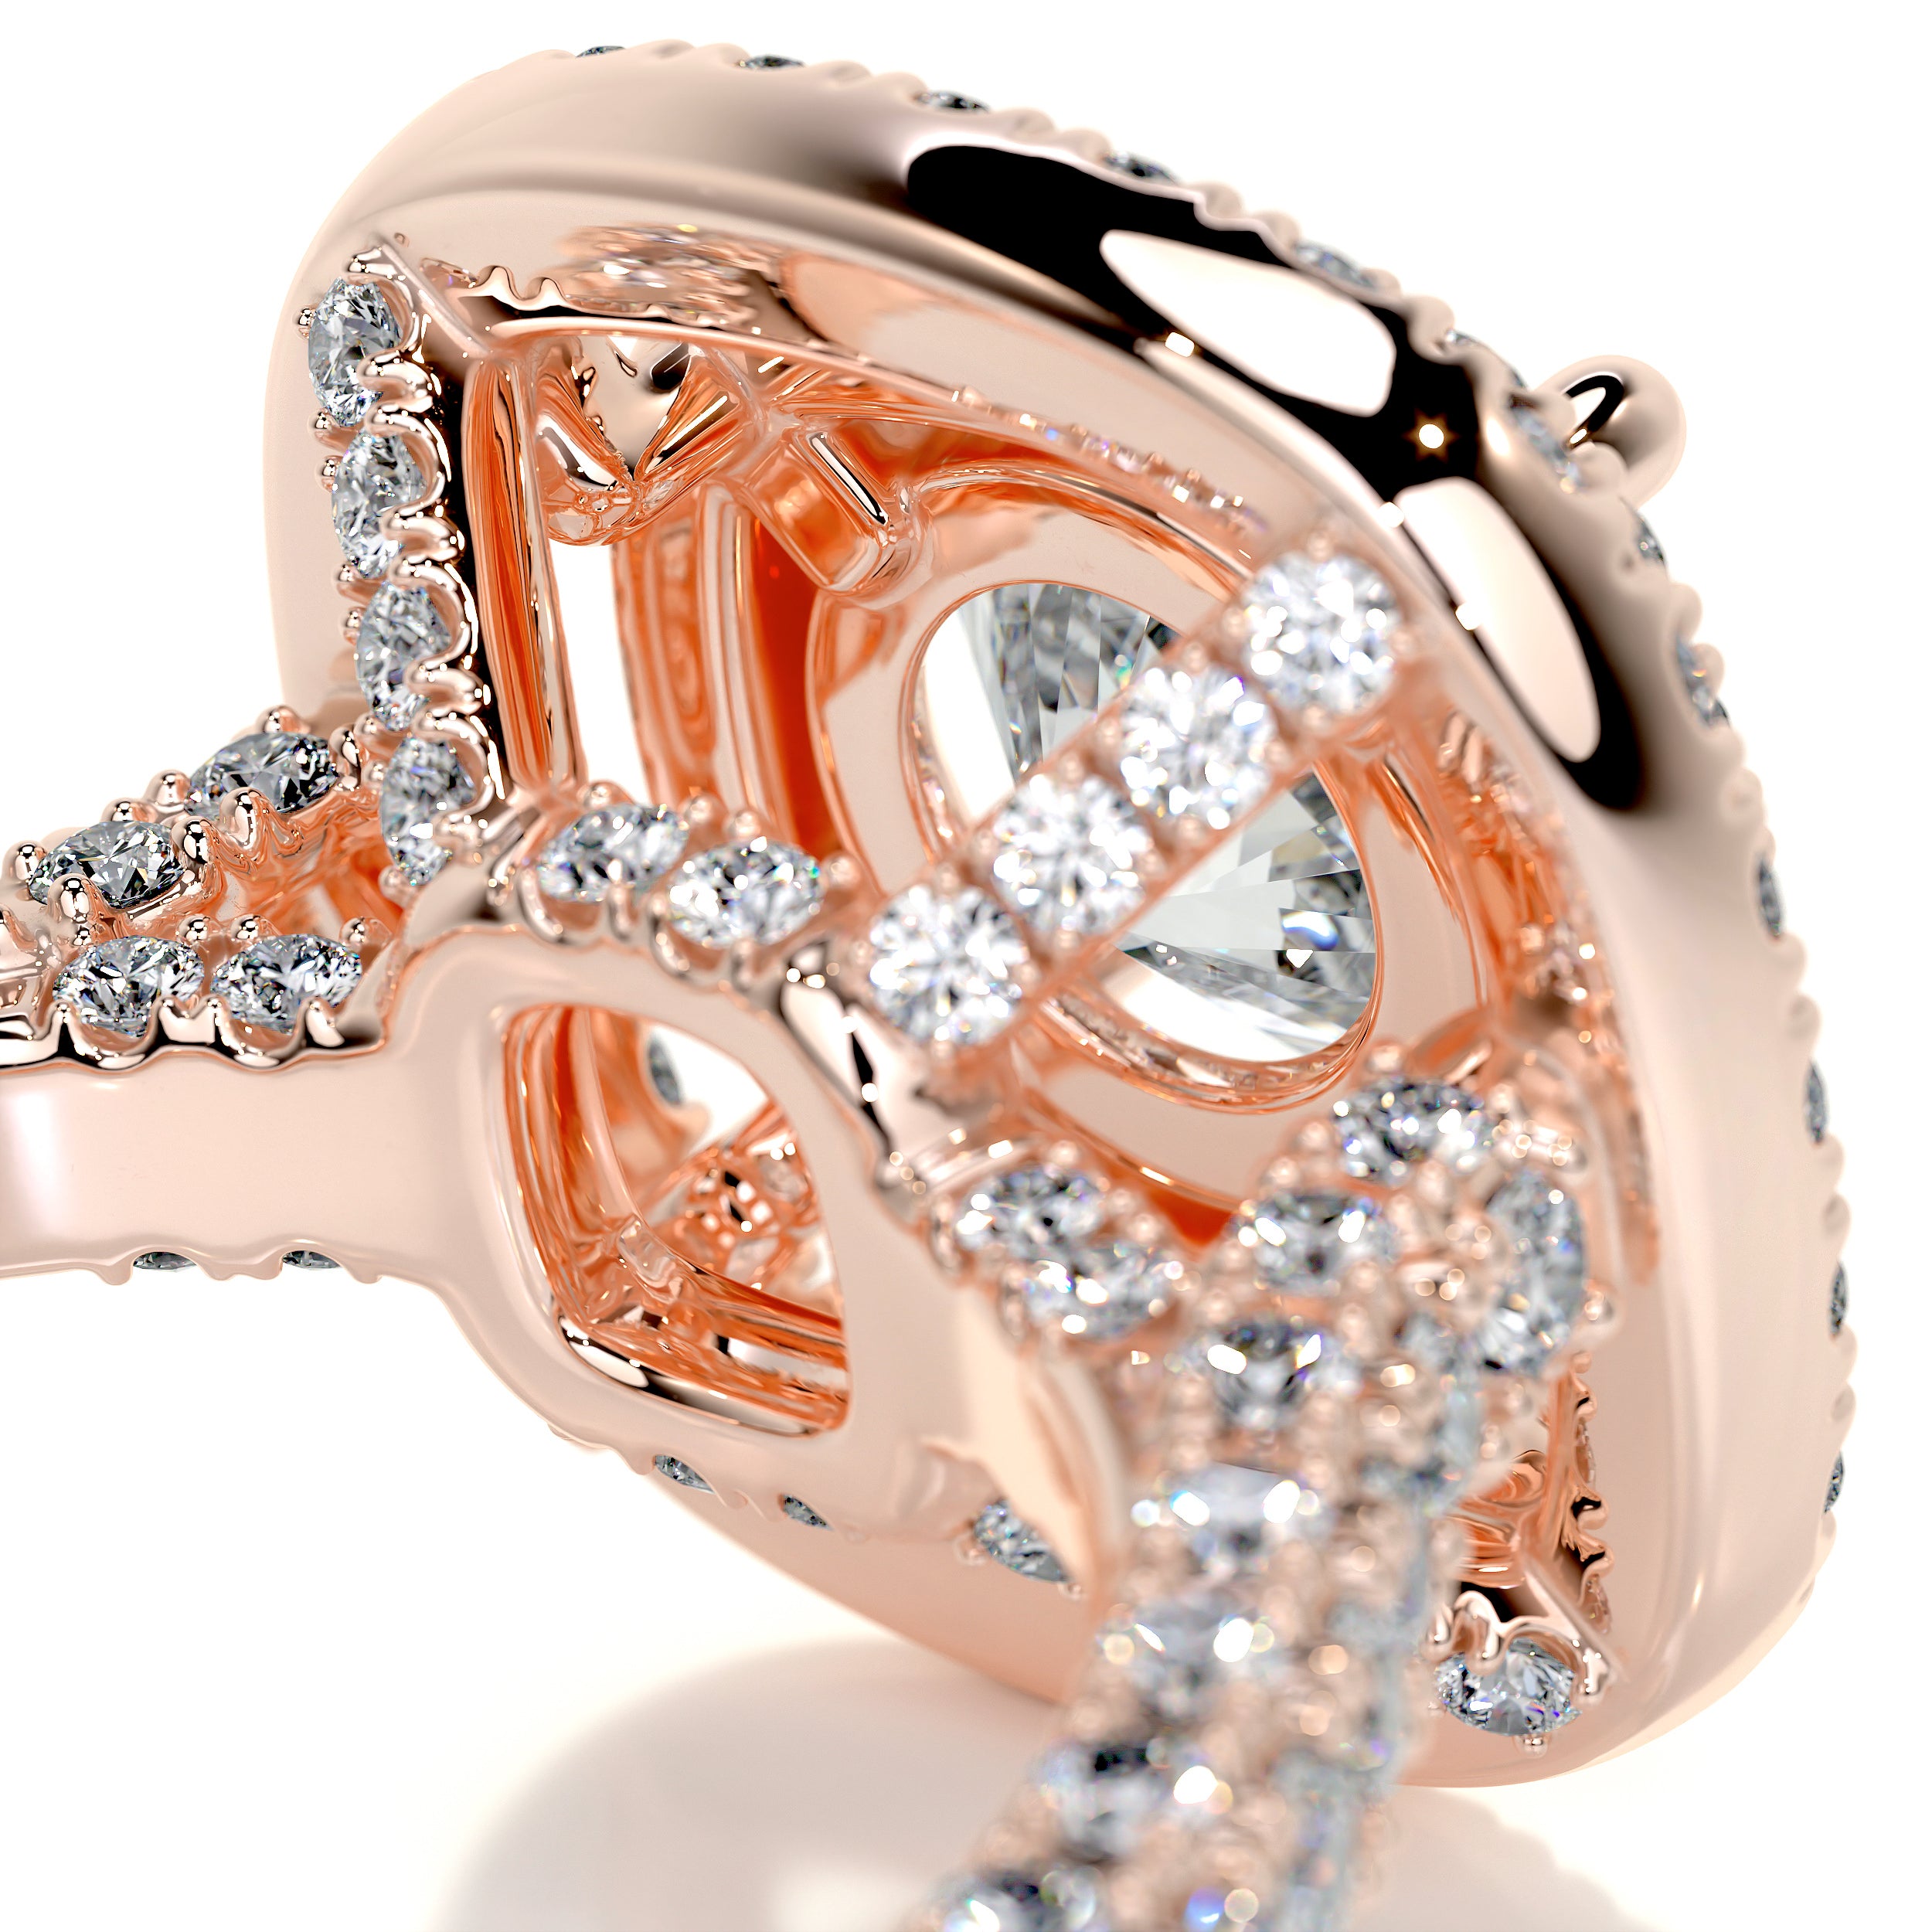 Carmen Diamond Engagement Ring   (2.25 Carat) -14K Rose Gold